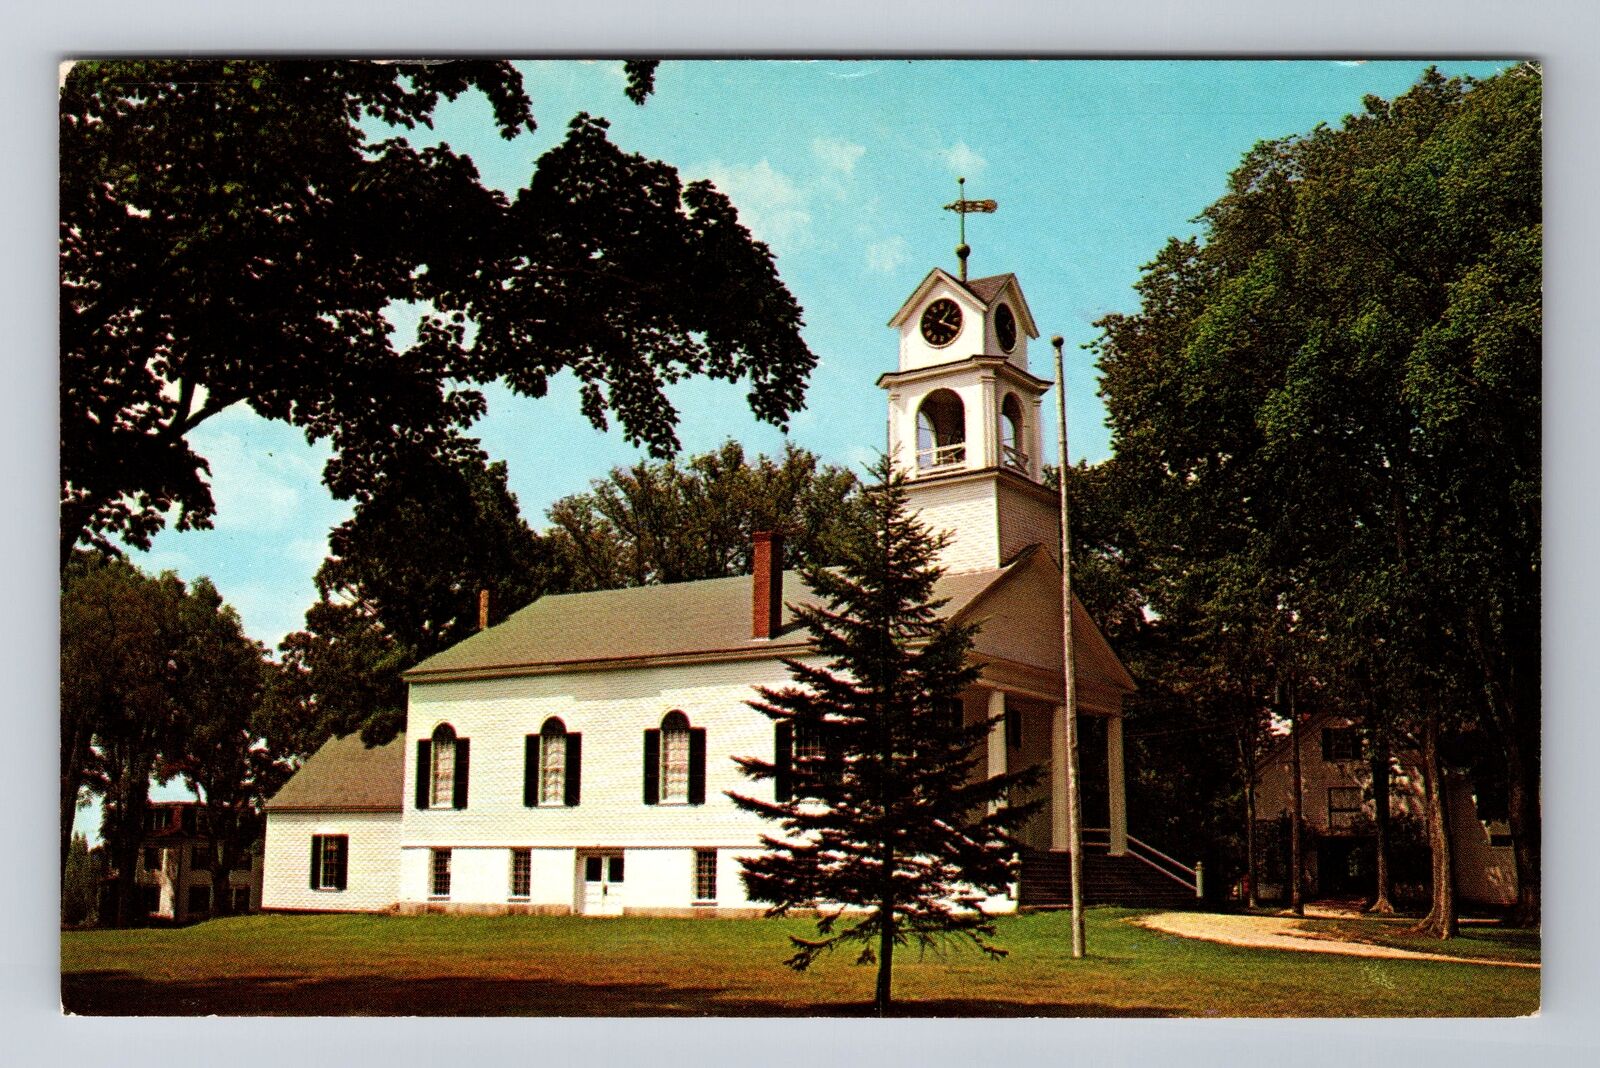 Paris Hill ME-Maine, First Baptist Church, Religion, Antique, Vintage Postcard